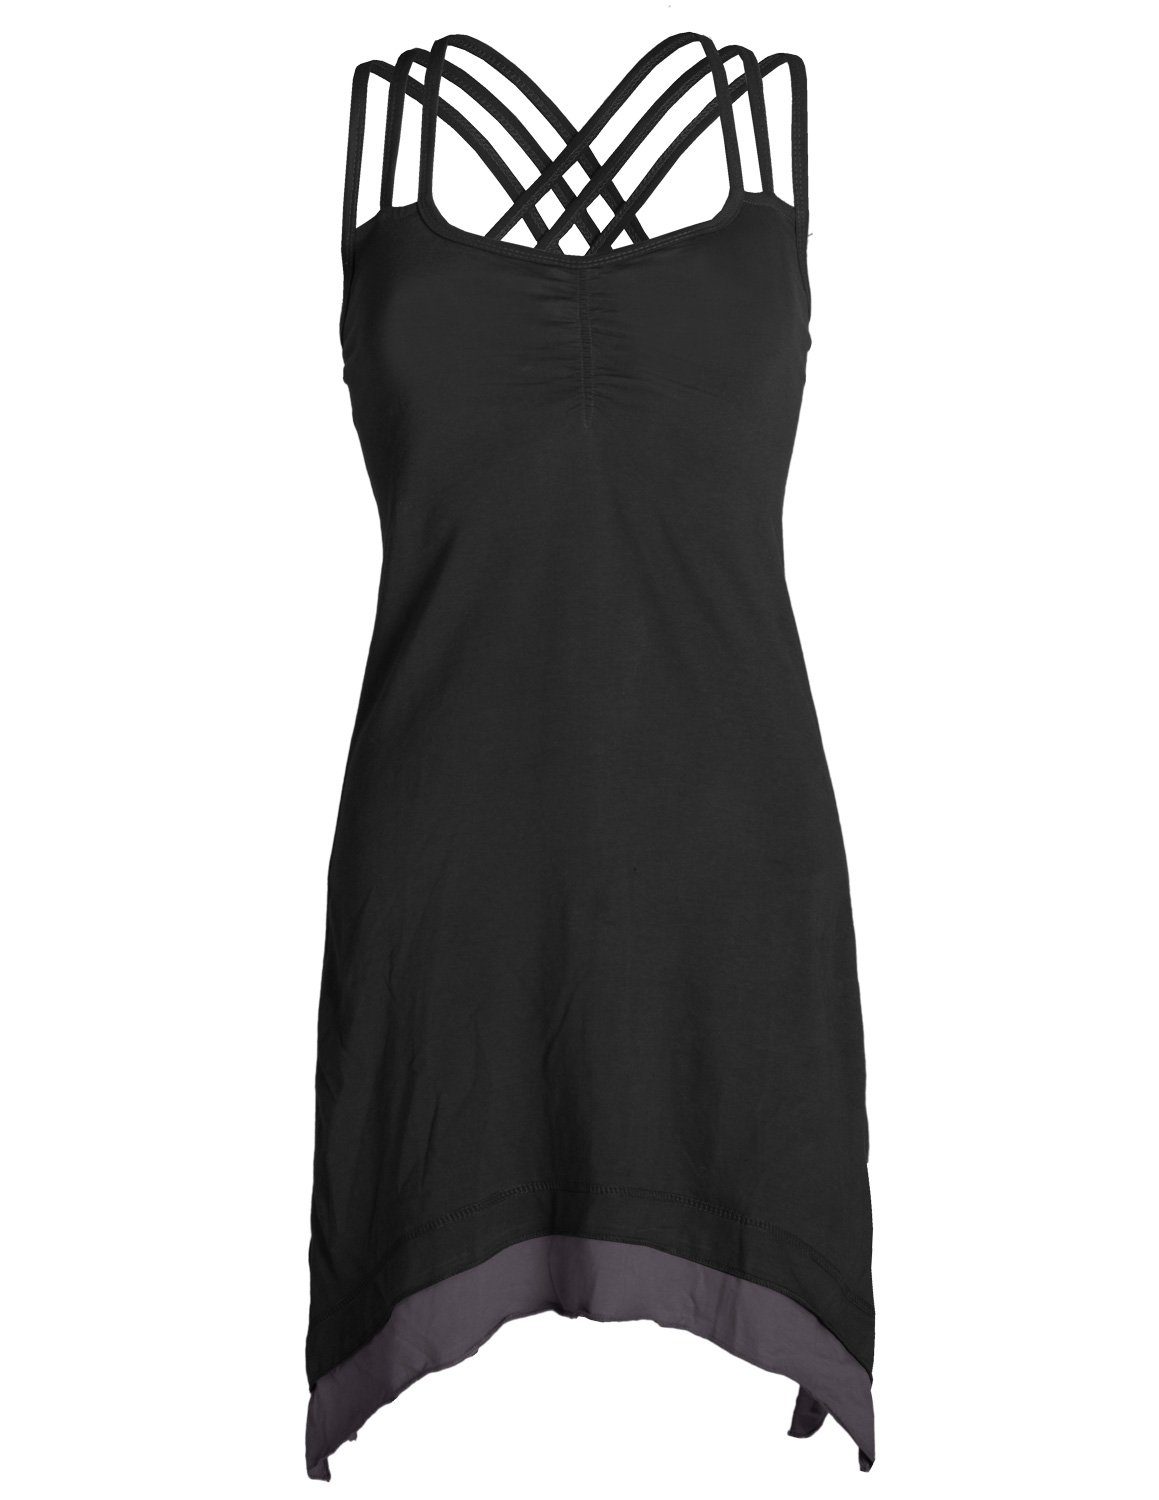 Vishes Sommerkleid Lagenlook schwarz Style mit Organic Zipfeln Cotton Elfen, Boho Trägerkleid Hippie